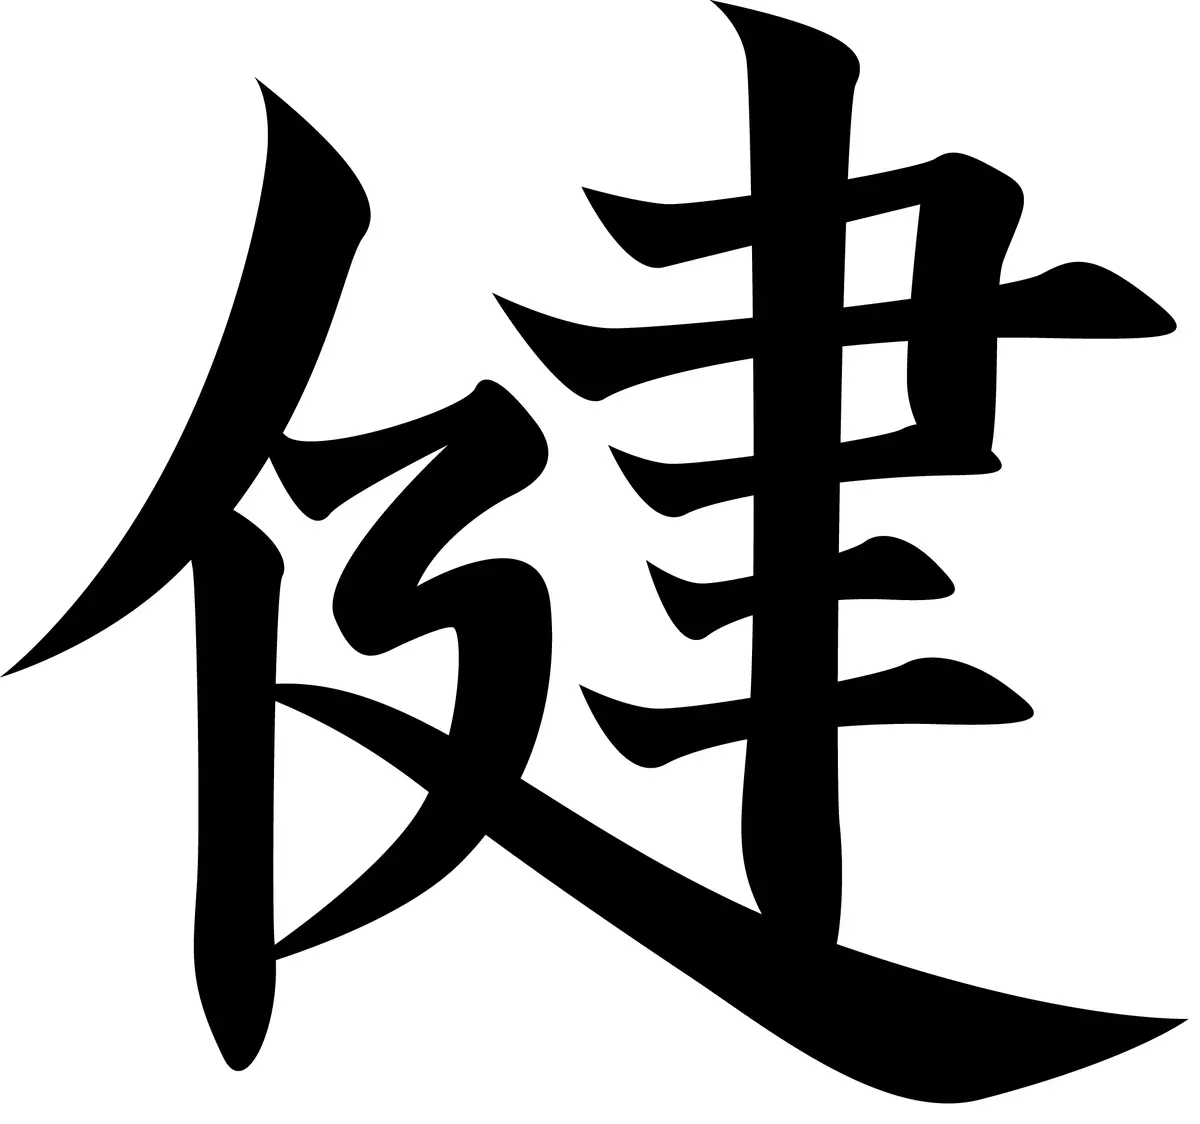 Hieroglyphs (40 तस्वीरें): खुशी के चीनी पात्र, शुभकामनाएं, प्यार और धन। परिवार में स्वास्थ्य और धन को कैसे आकर्षित करें? 8261_25